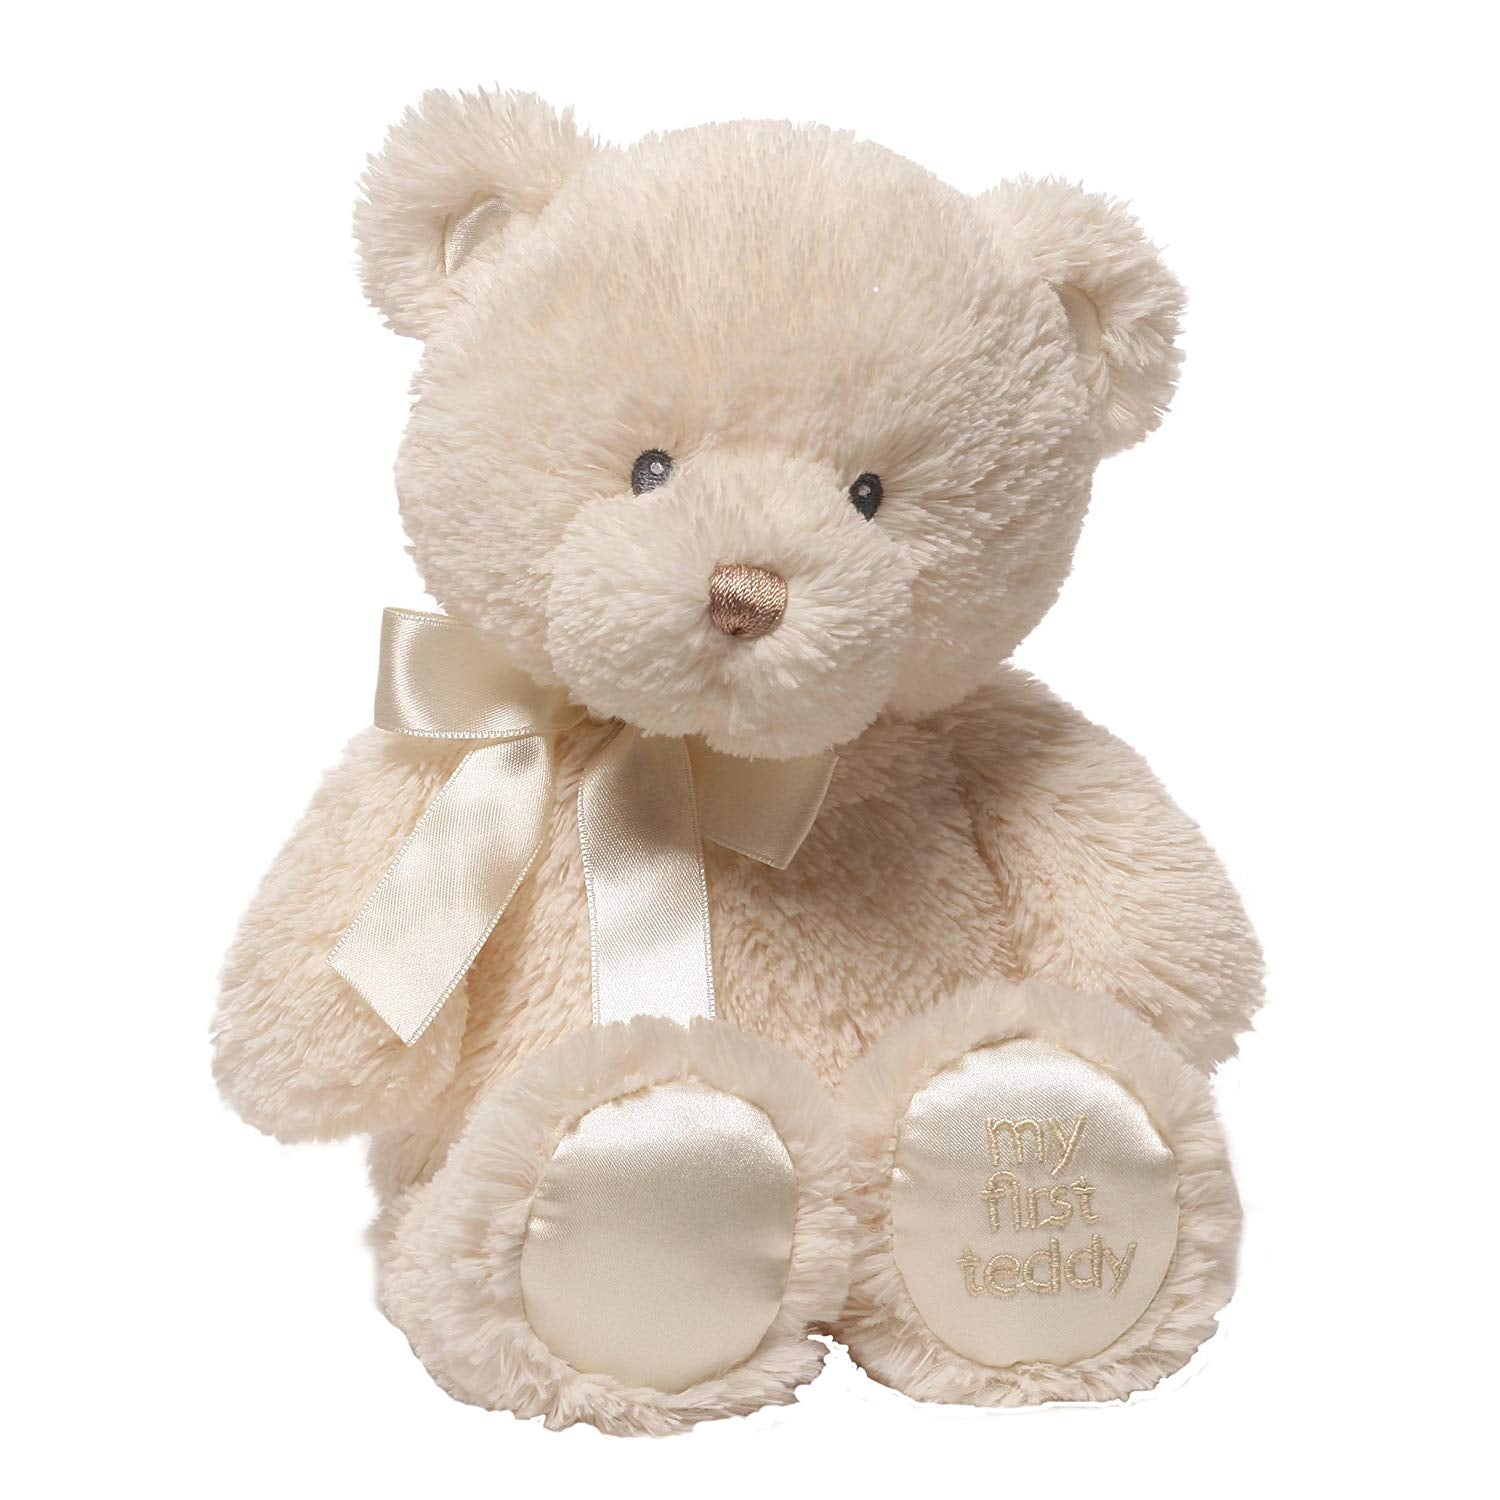 Baby GUND My First Friend Teddy Bear, Tan - Gund